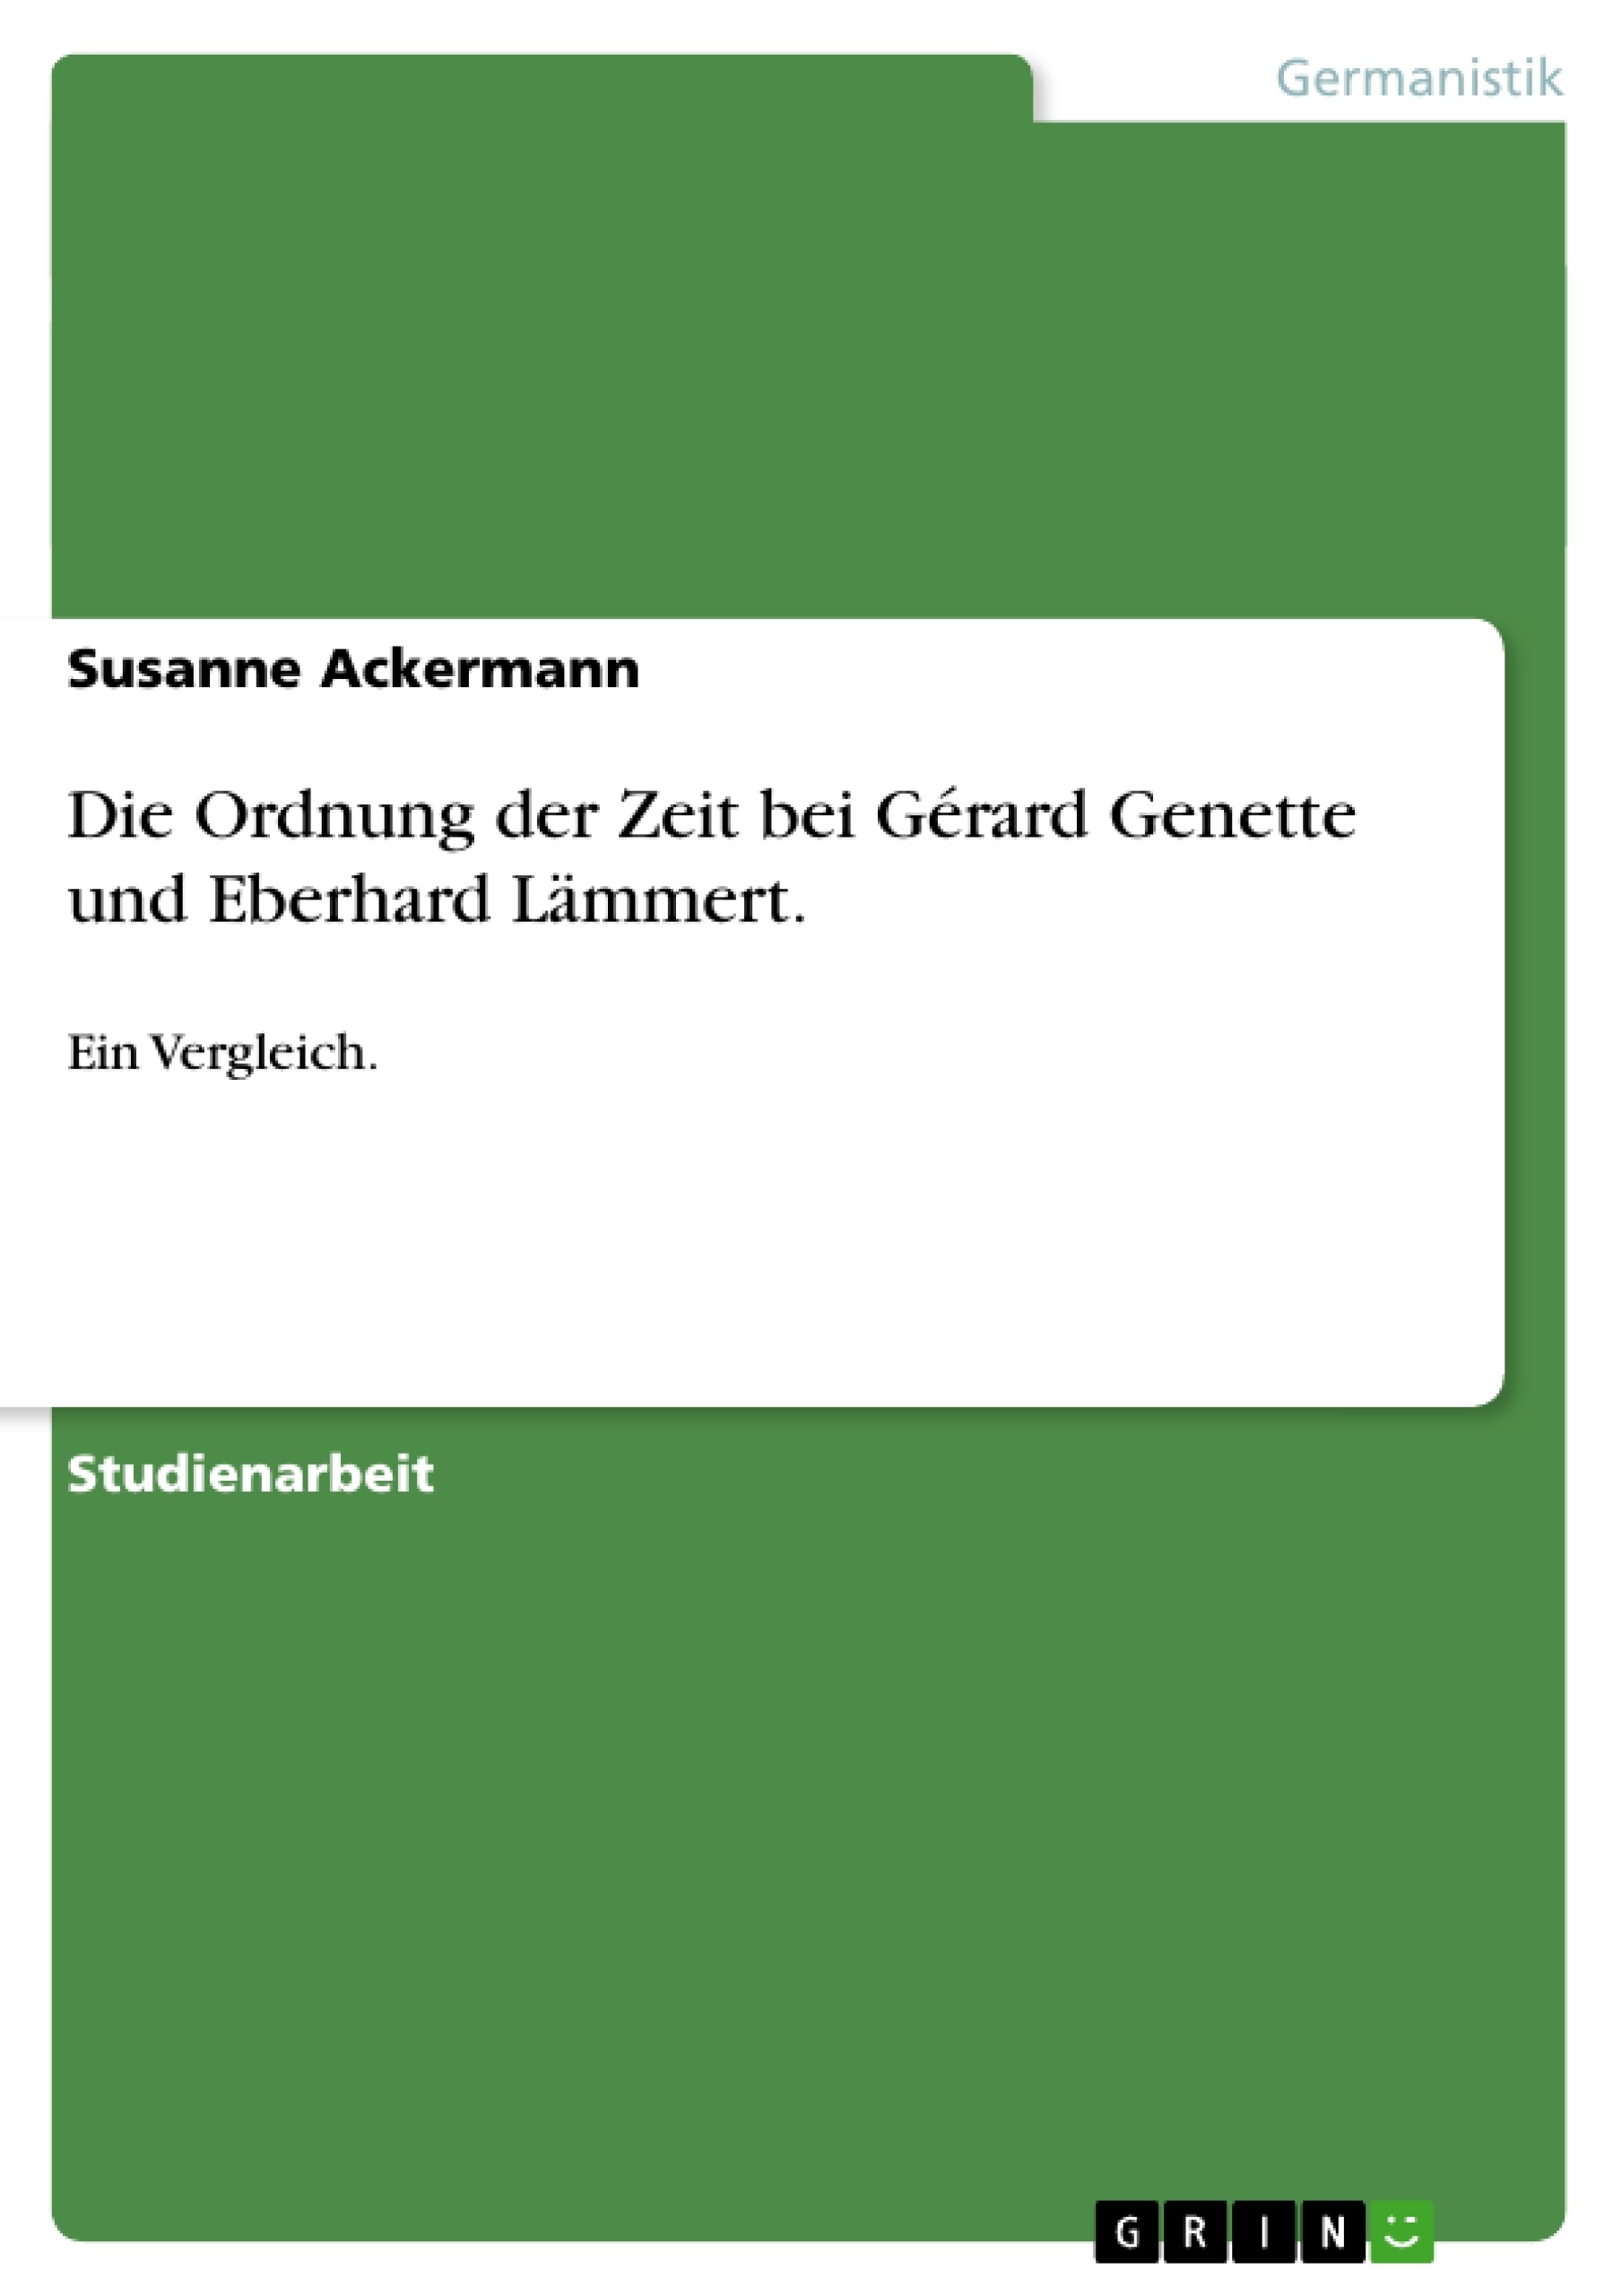 Título: Die Ordnung der Zeit bei Gérard Genette und Eberhard Lämmert.